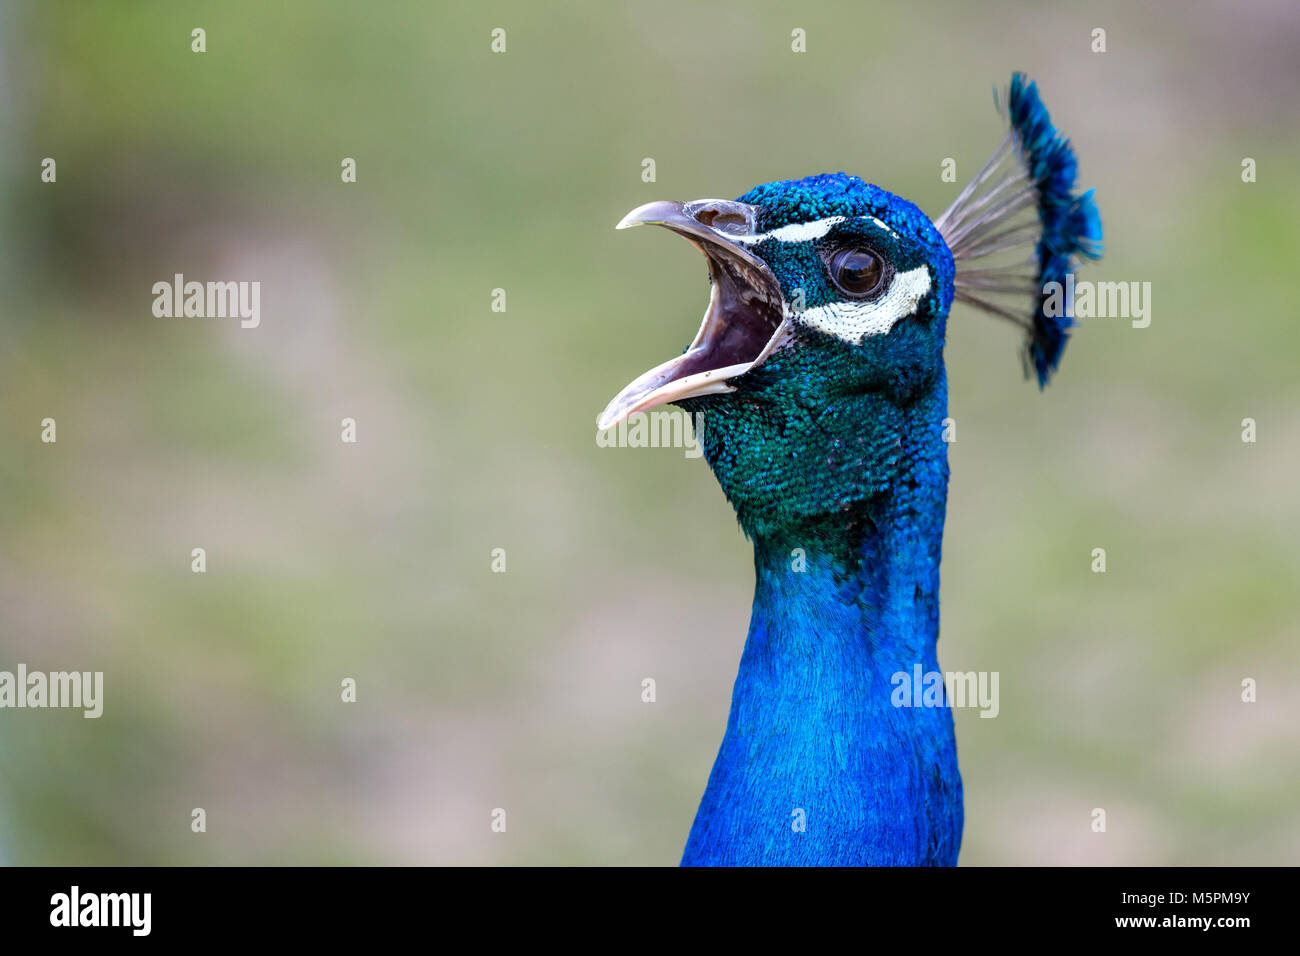 Peacock portrait Stock Photo